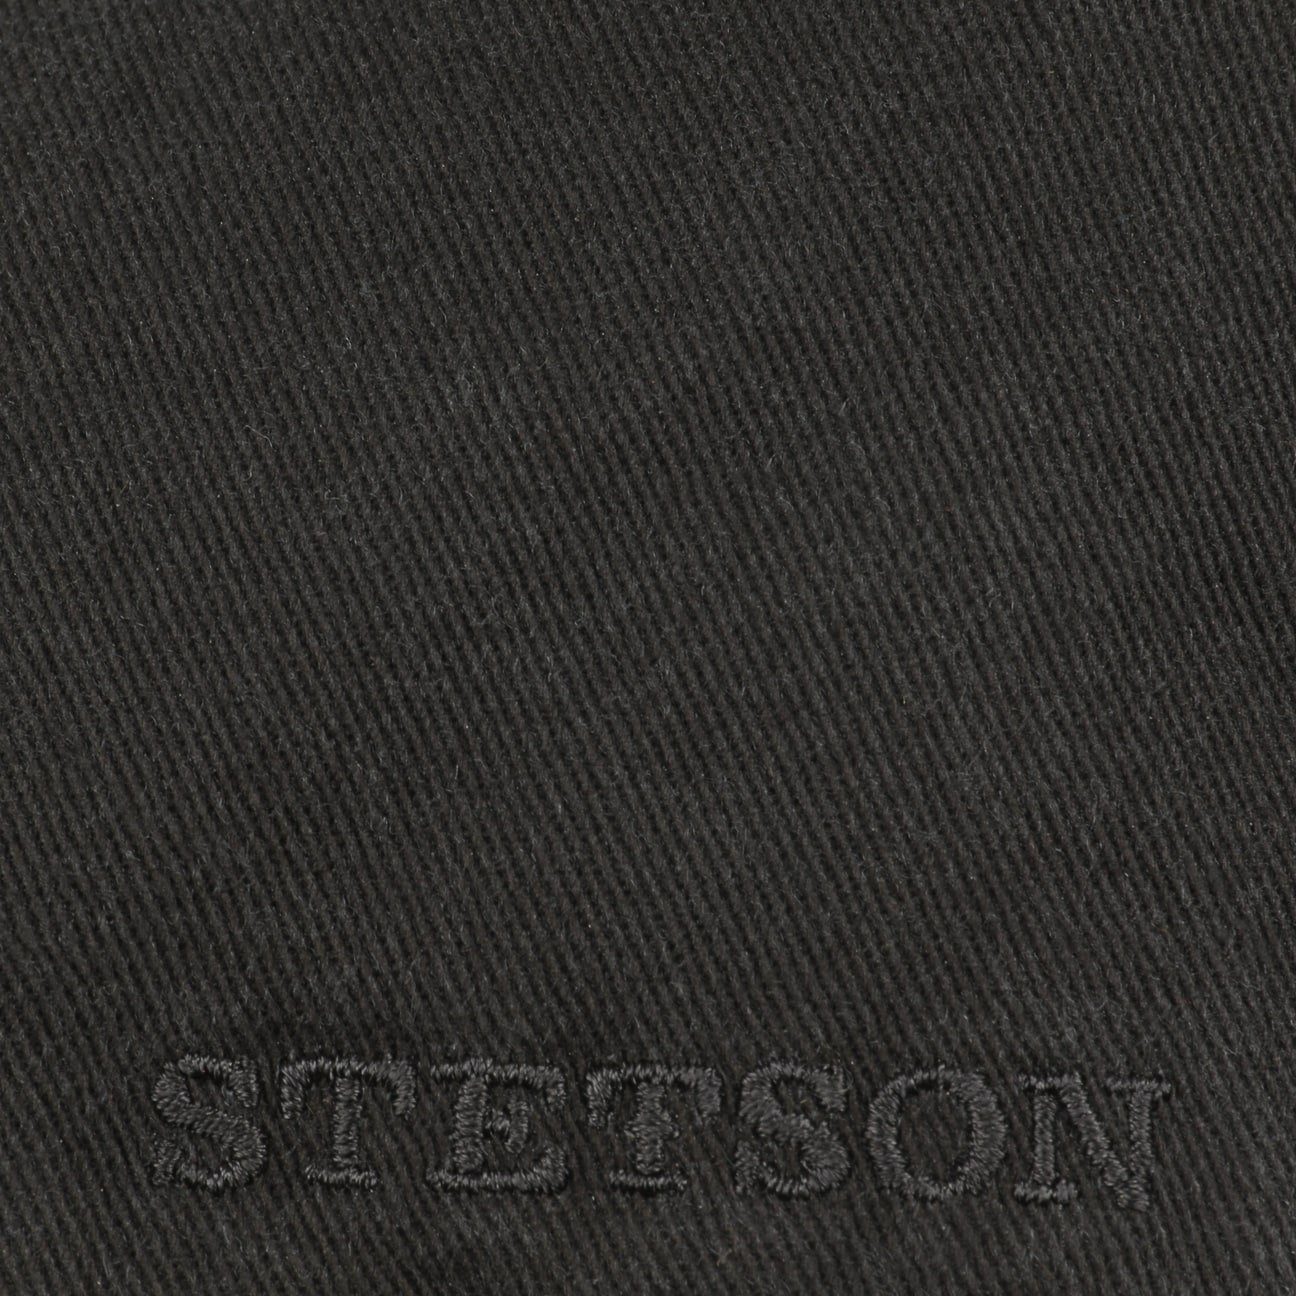 Stetson Flat Cap (1-St) Schirm schwarz Schirmmütze mit